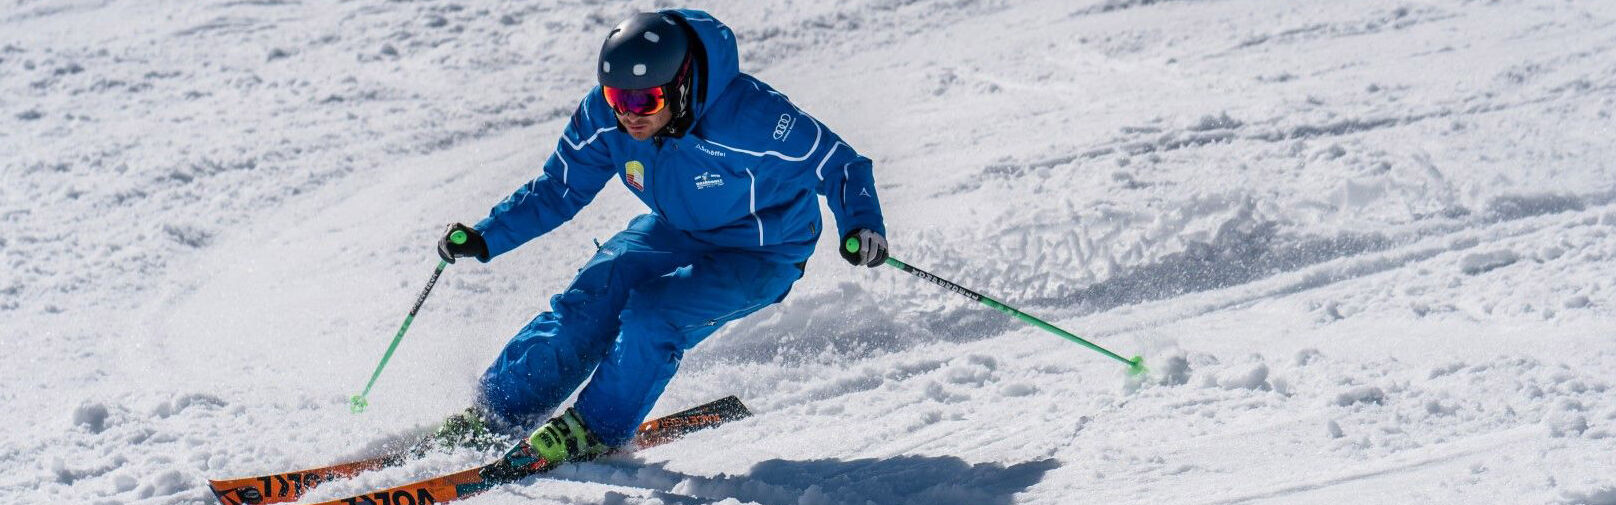 Leer skiën in Flachau - skicursussen, snowboardcursussen - skischool Flachau